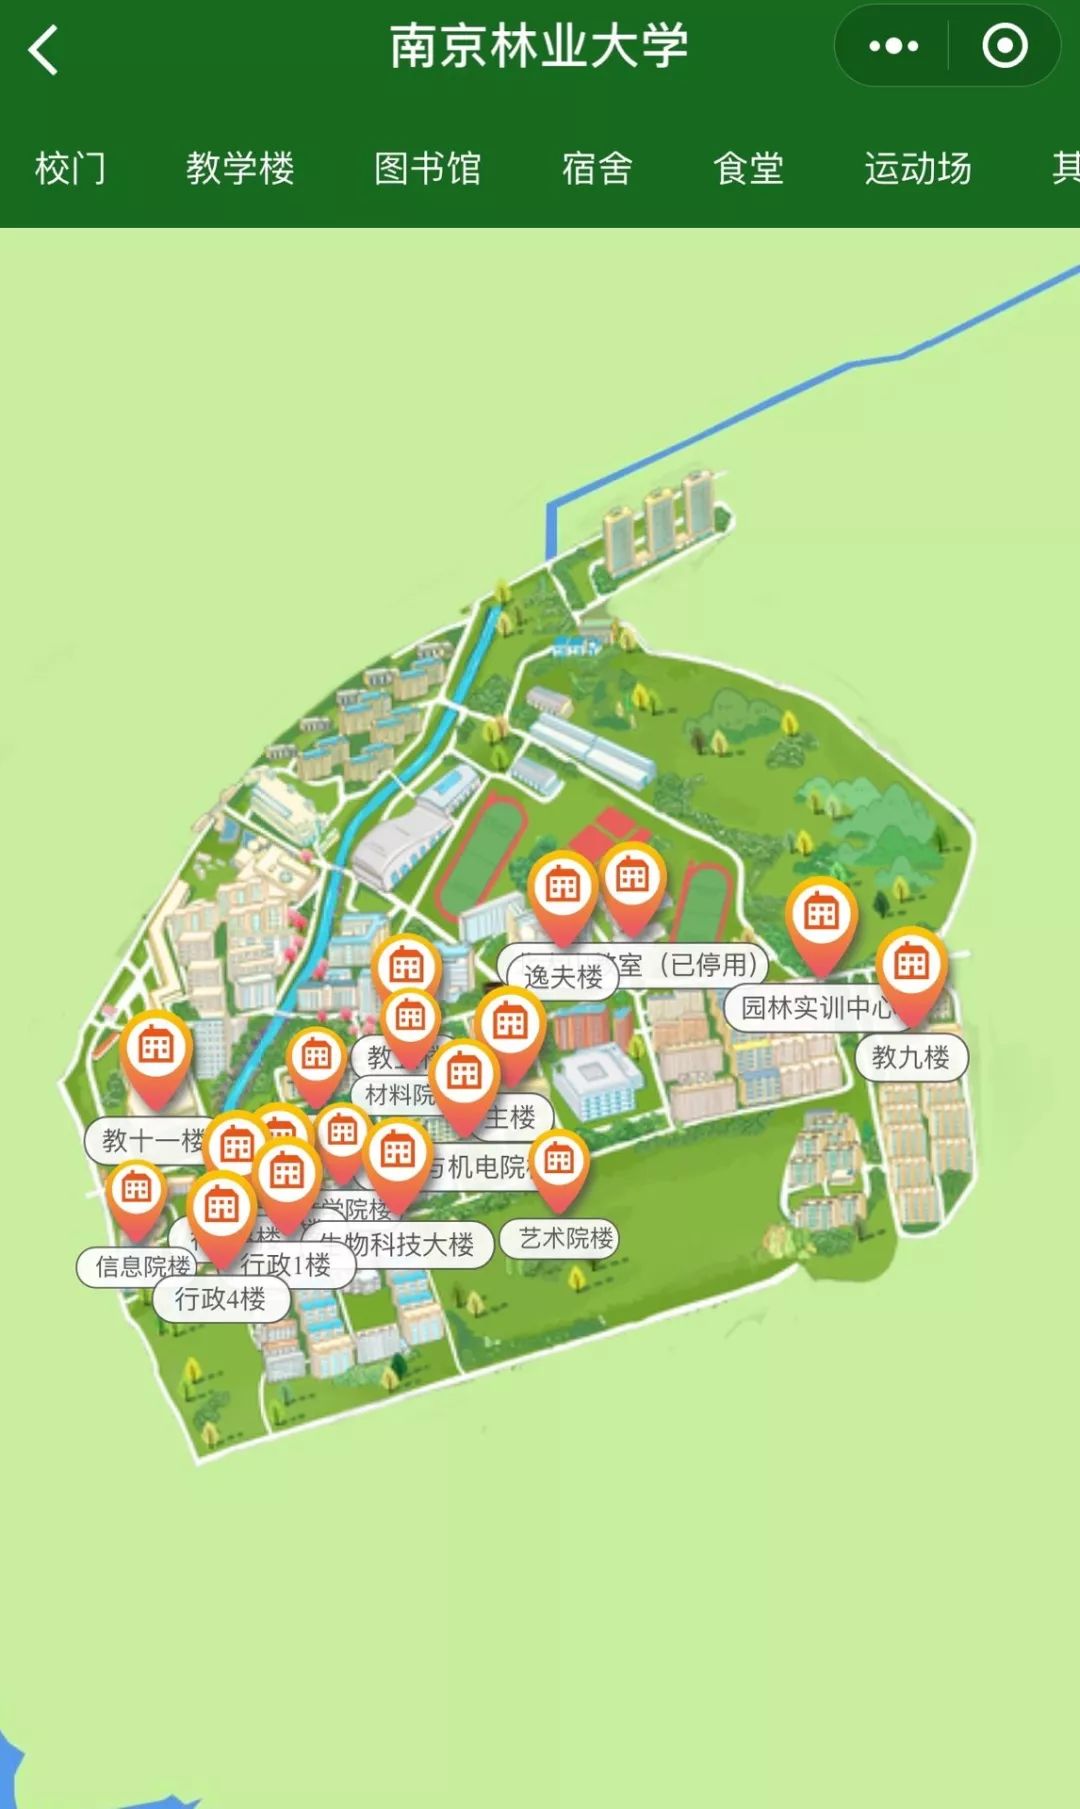 南京林业大学手绘地图图片